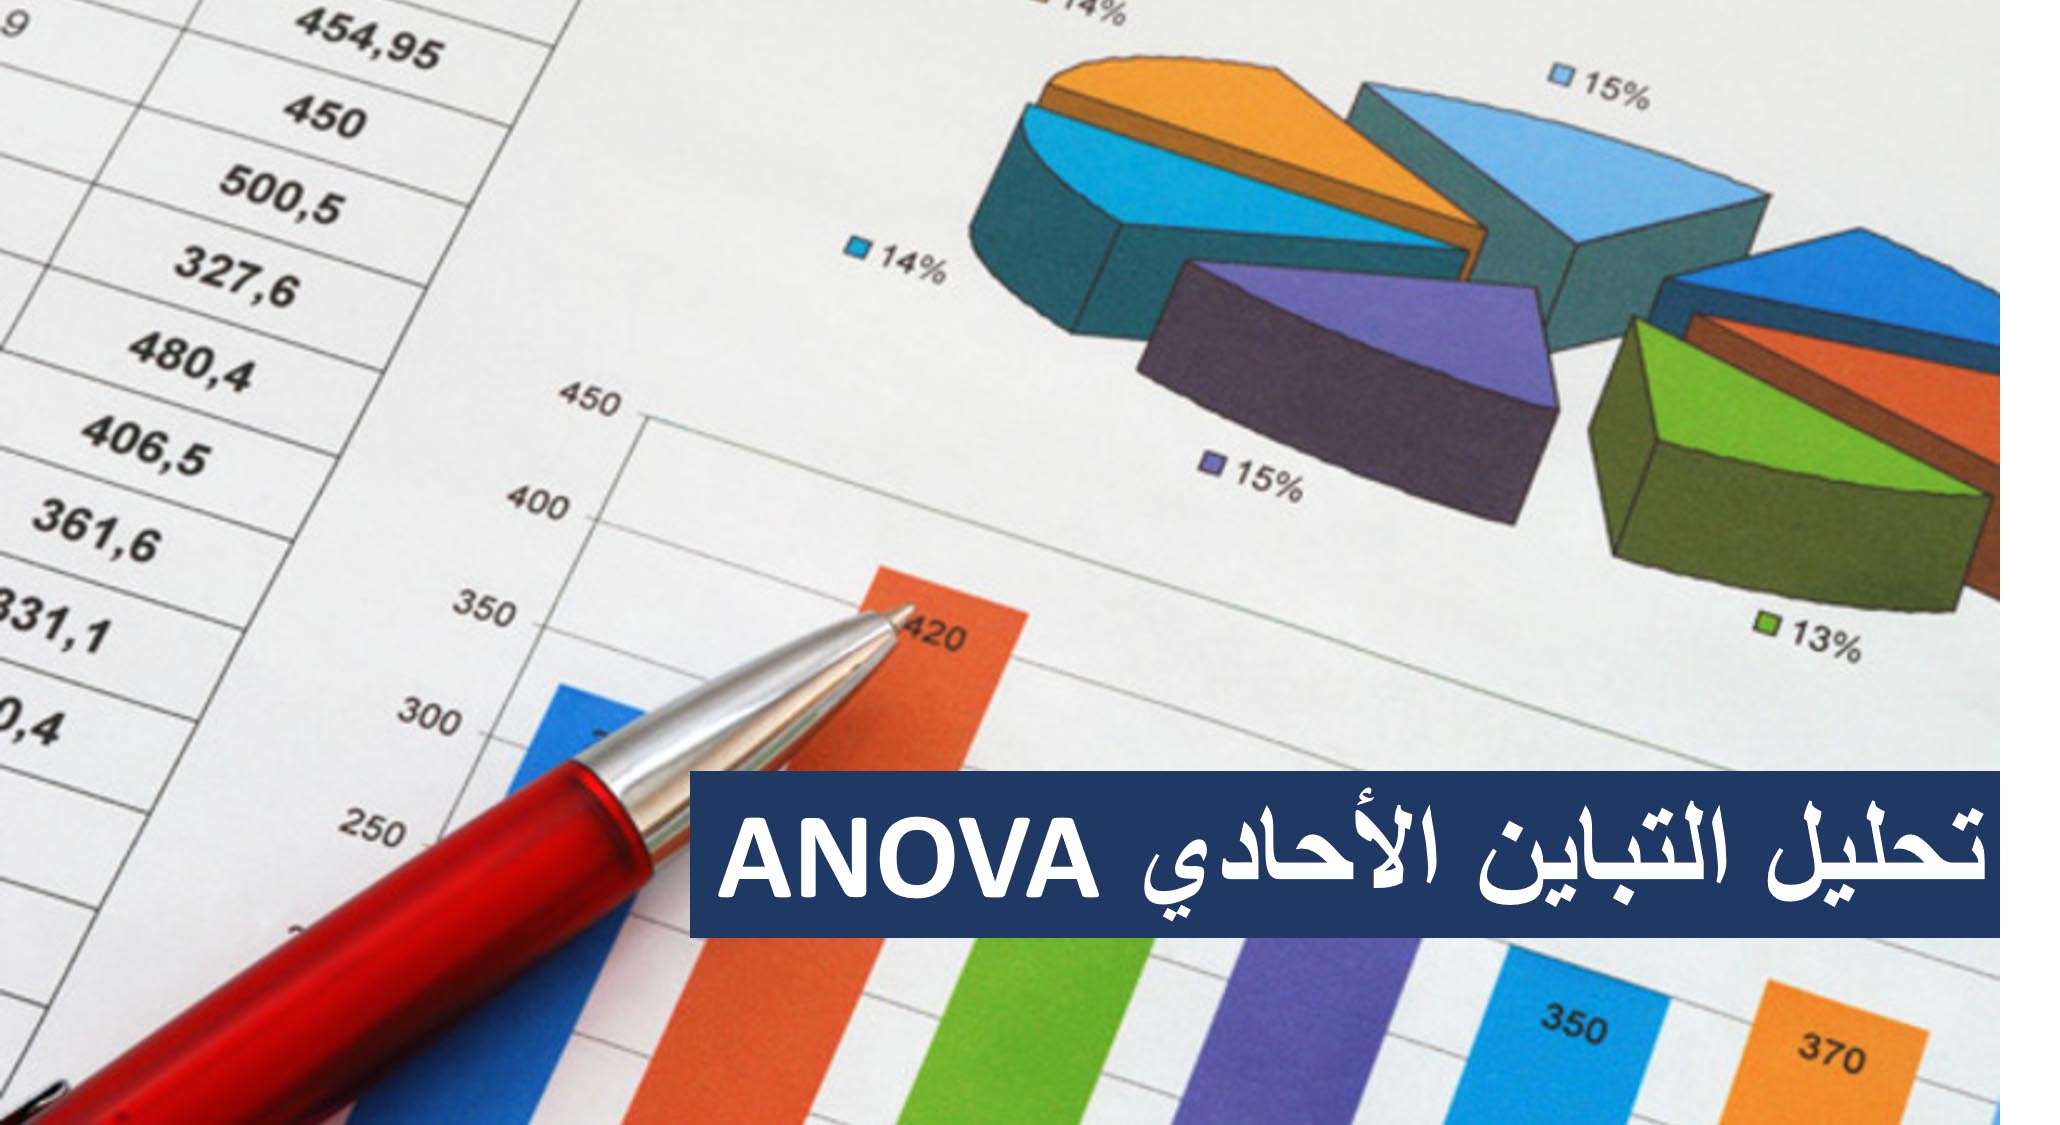 تحليل التباين الأحادي ANOVA